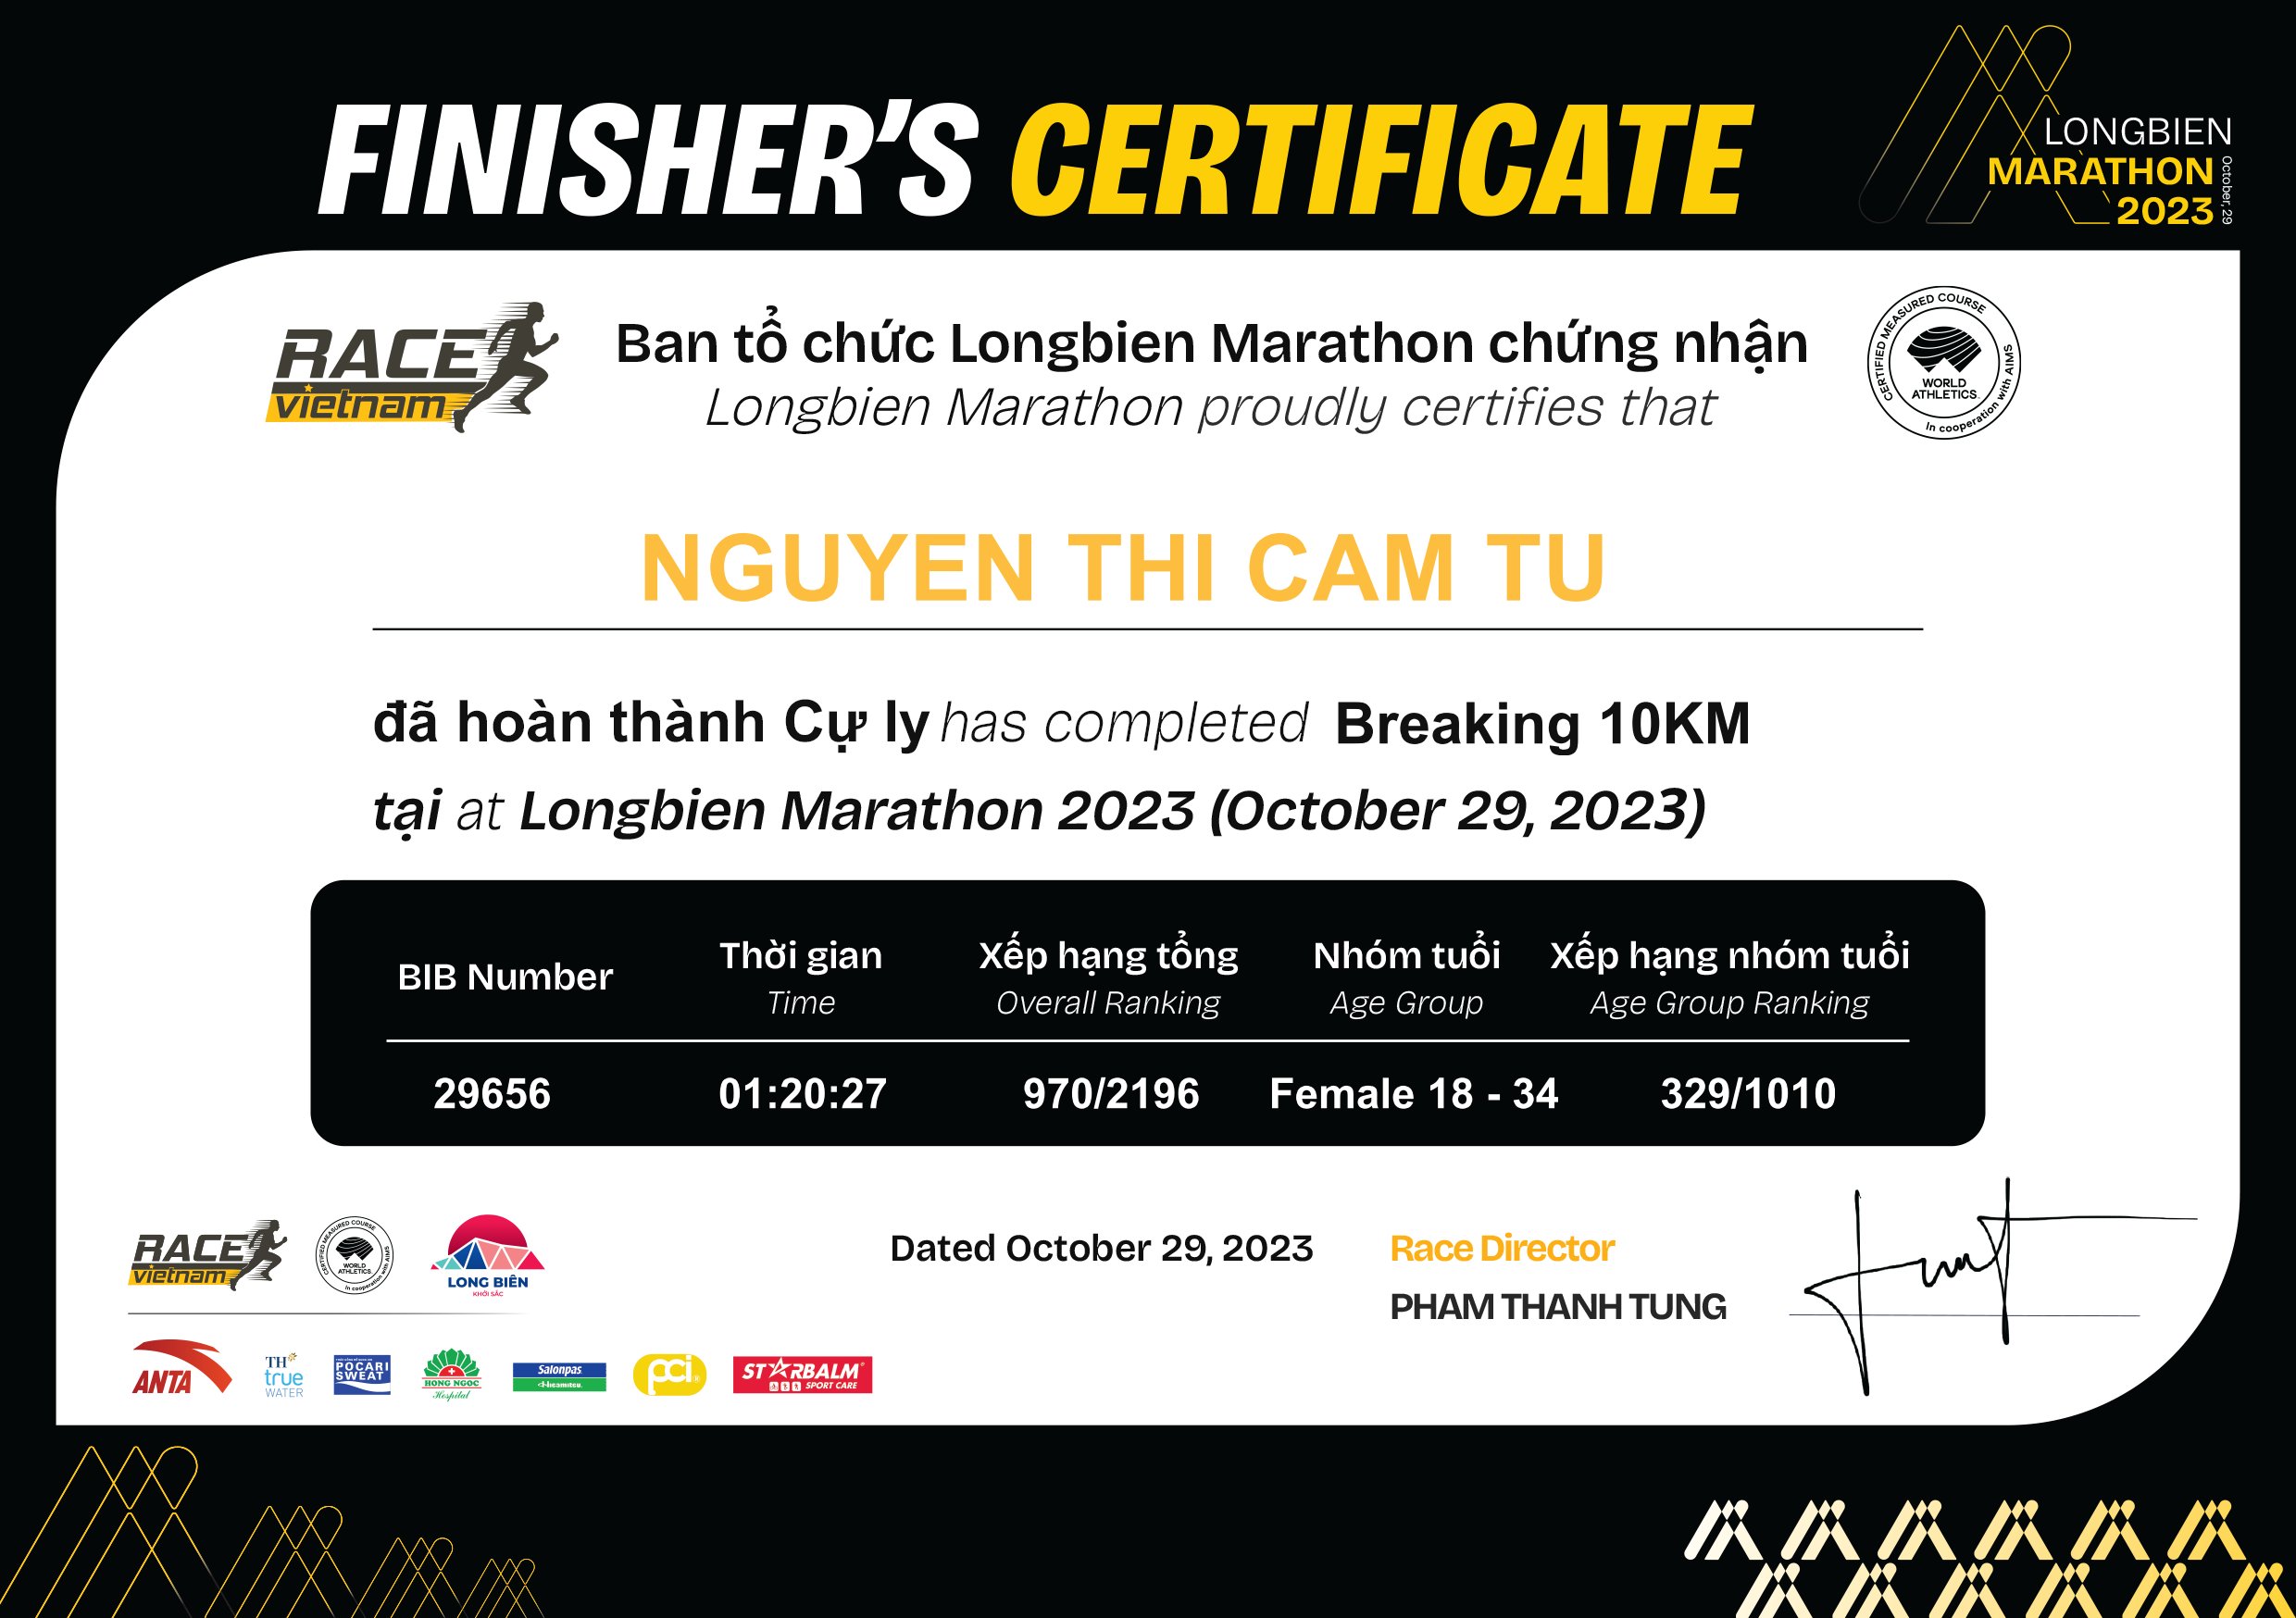 29656 - Nguyen Thi Cam Tu